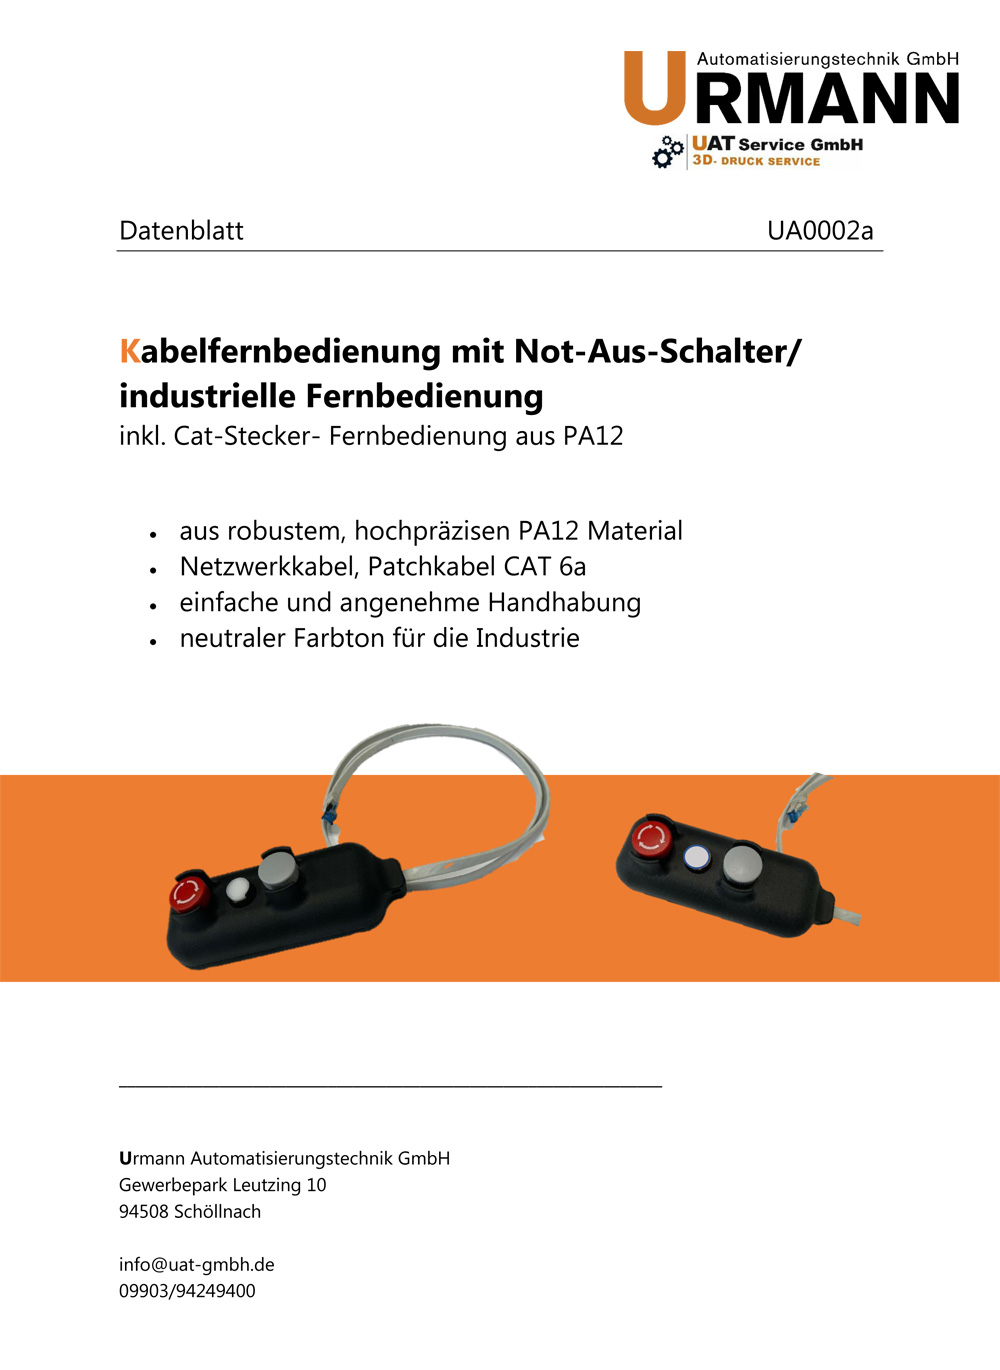 Kabelfernbedienung Urmann Automatisierungstechnik GmbH